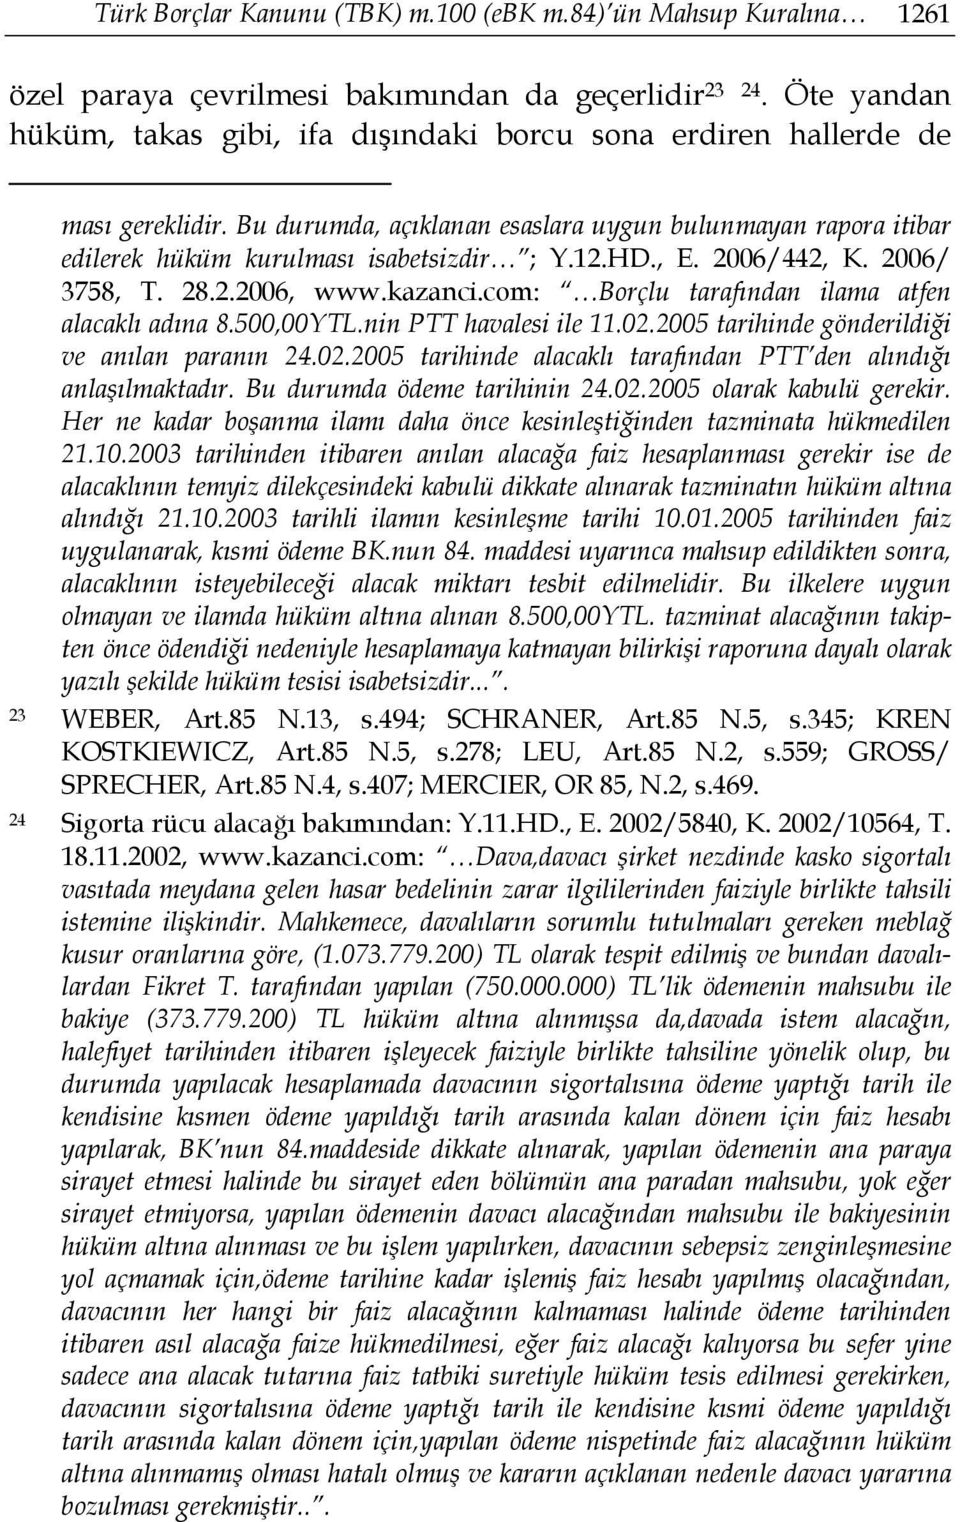 HD., E. 2006/442, K. 2006/ 3758, T. 28.2.2006, www.kazanci.com: Borçlu tarafından ilama atfen alacaklı adına 8.500,00YTL.nin PTT havalesi ile 11.02.